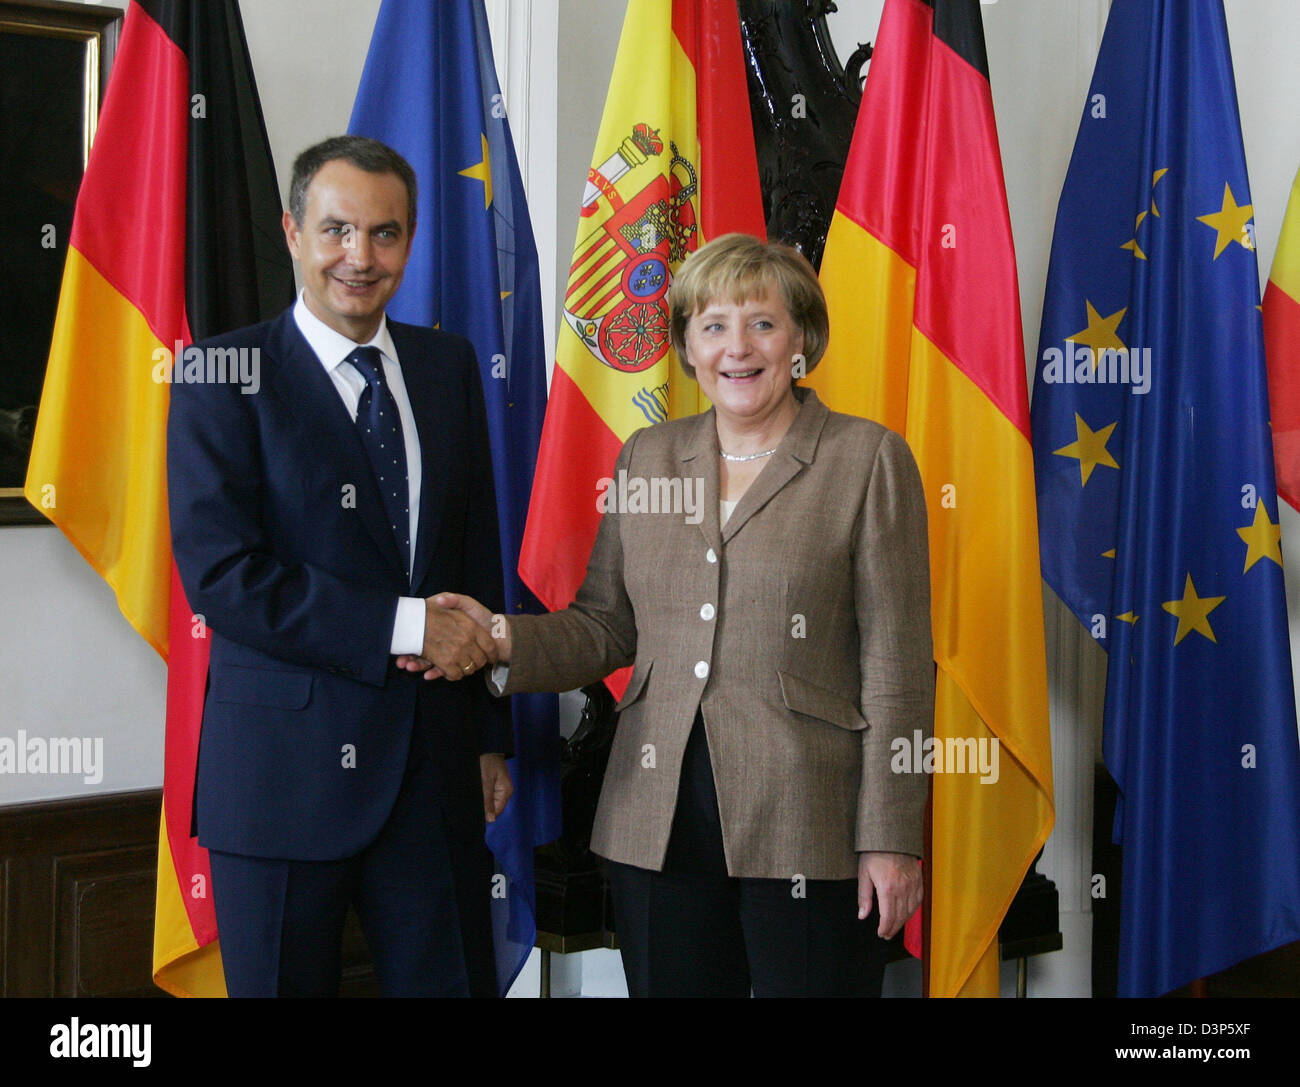 La chancelière allemande Angela Merkel (R) et le Premier ministre espagnol Jose Luis Rodriguez Zapatero (L) se serrer la main au niveau de l'articulation des consultations du gouvernement à Meersburg, Allemagne, mardi 12 septembre 2006. Photo : Daniel Maurer Banque D'Images